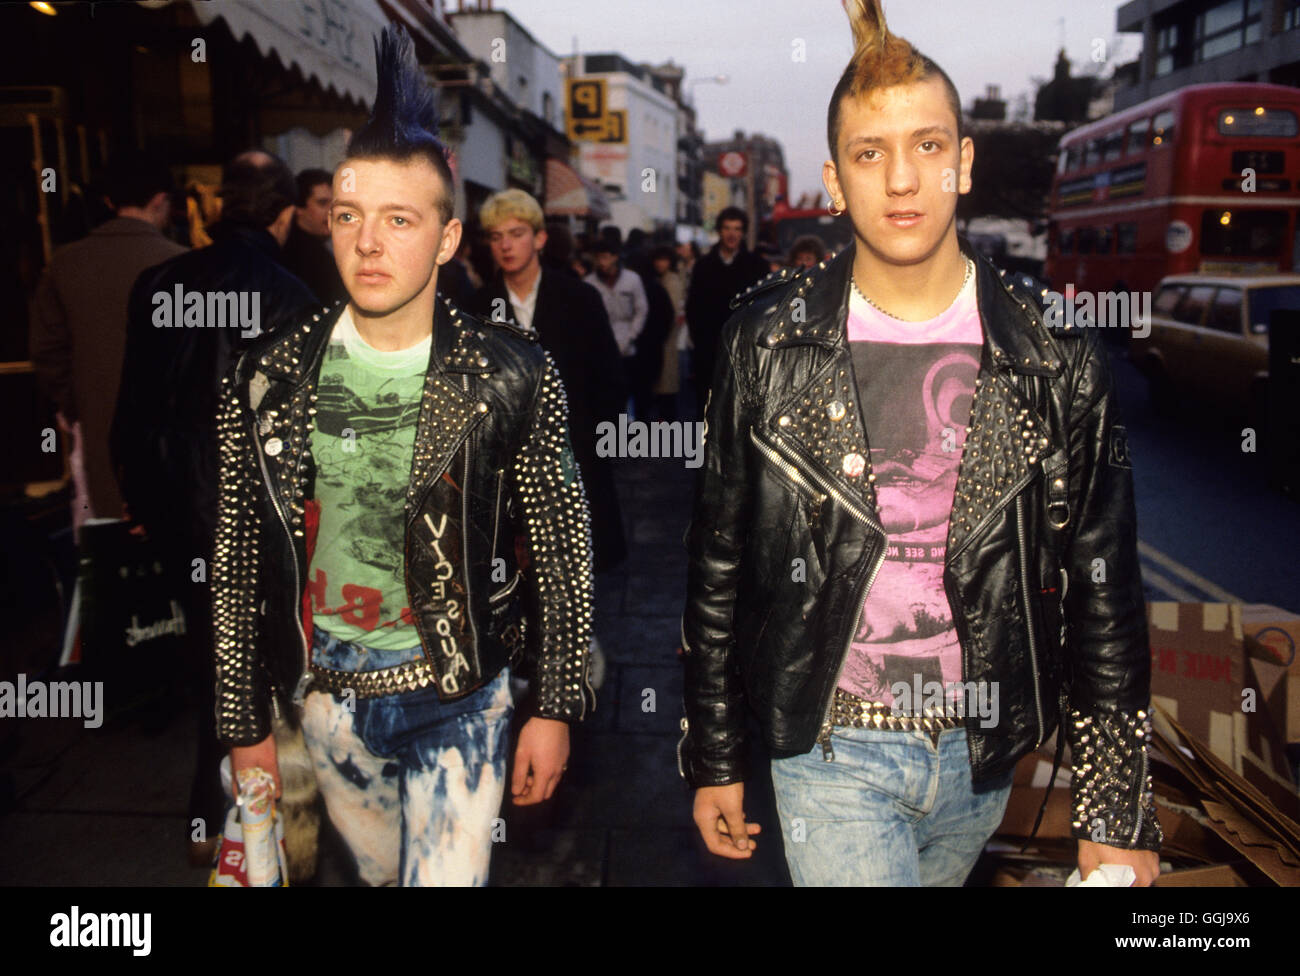 Punk Fashion Punks aus den 1980er Jahren Moden Kings Road Chelsea London UK Teens machen ein modisches Statement, Nieten Jacken, Punkfrisuren, hausgemachte Hosen. 1985 HOMER SYKES Stockfoto